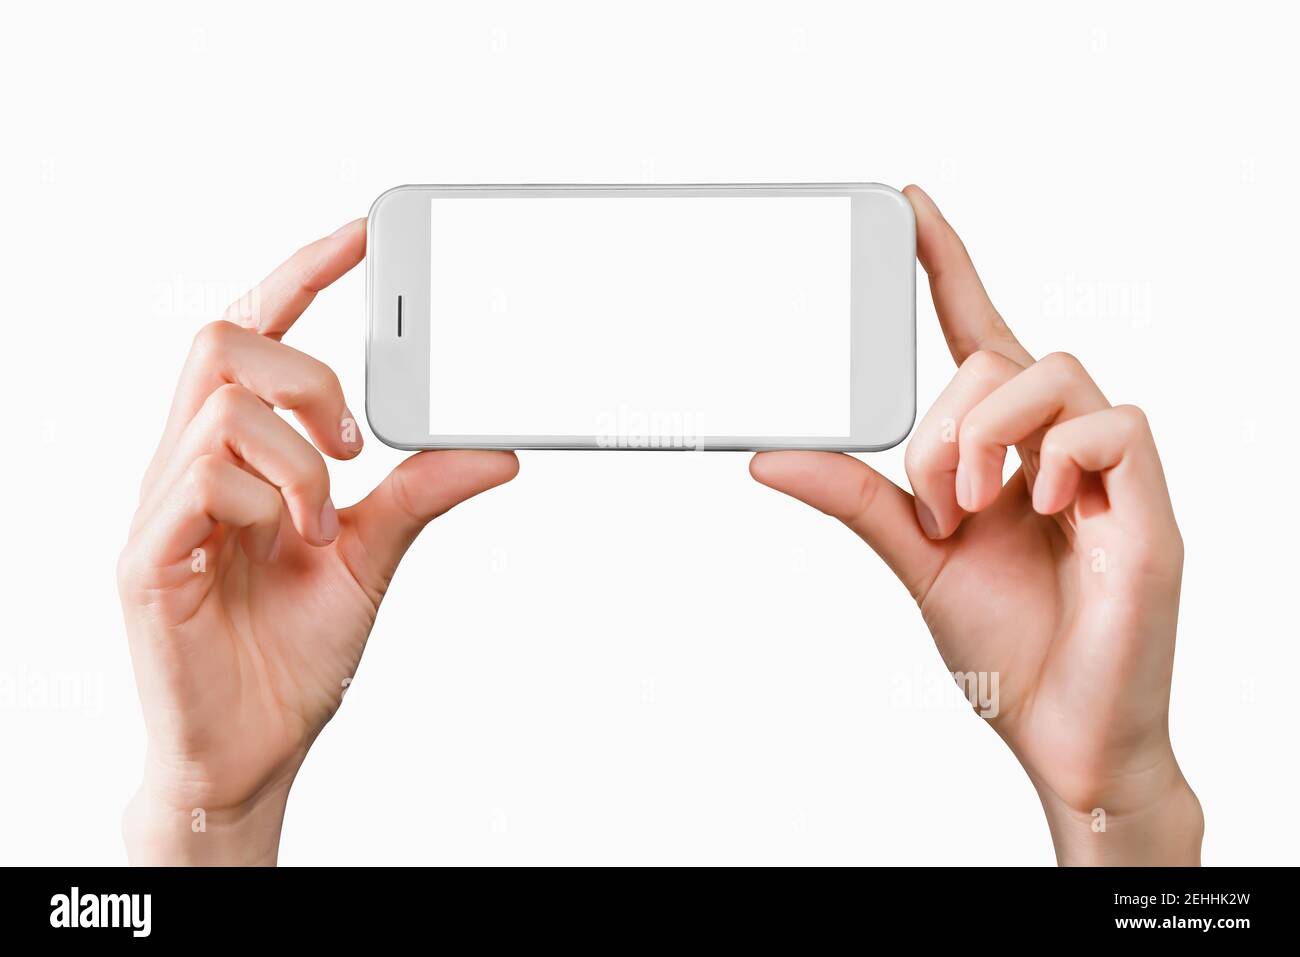 Main tenant smartphone maquette de l'écran vide sur isolé. Prenez votre écran pour mettre sur la publicité. Banque D'Images